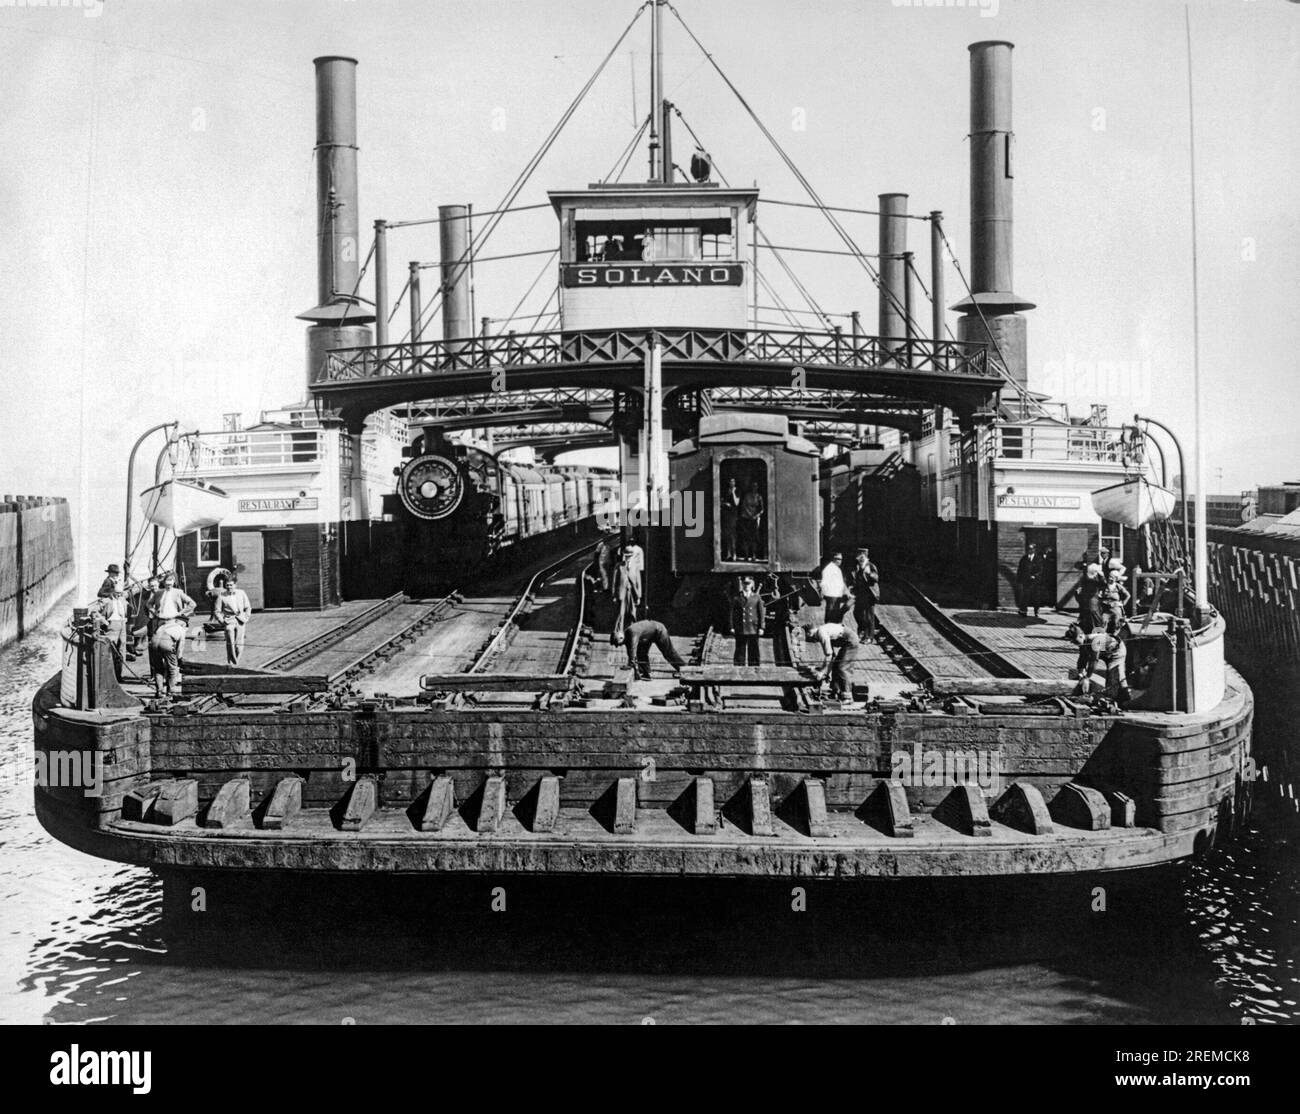 San Francisco, California: 1930 il Solano Ferry, il più grande traghetto ferroviario del mondo che attraversava lo stretto di Carquinez tra Port Costa e Benicia. Foto Stock